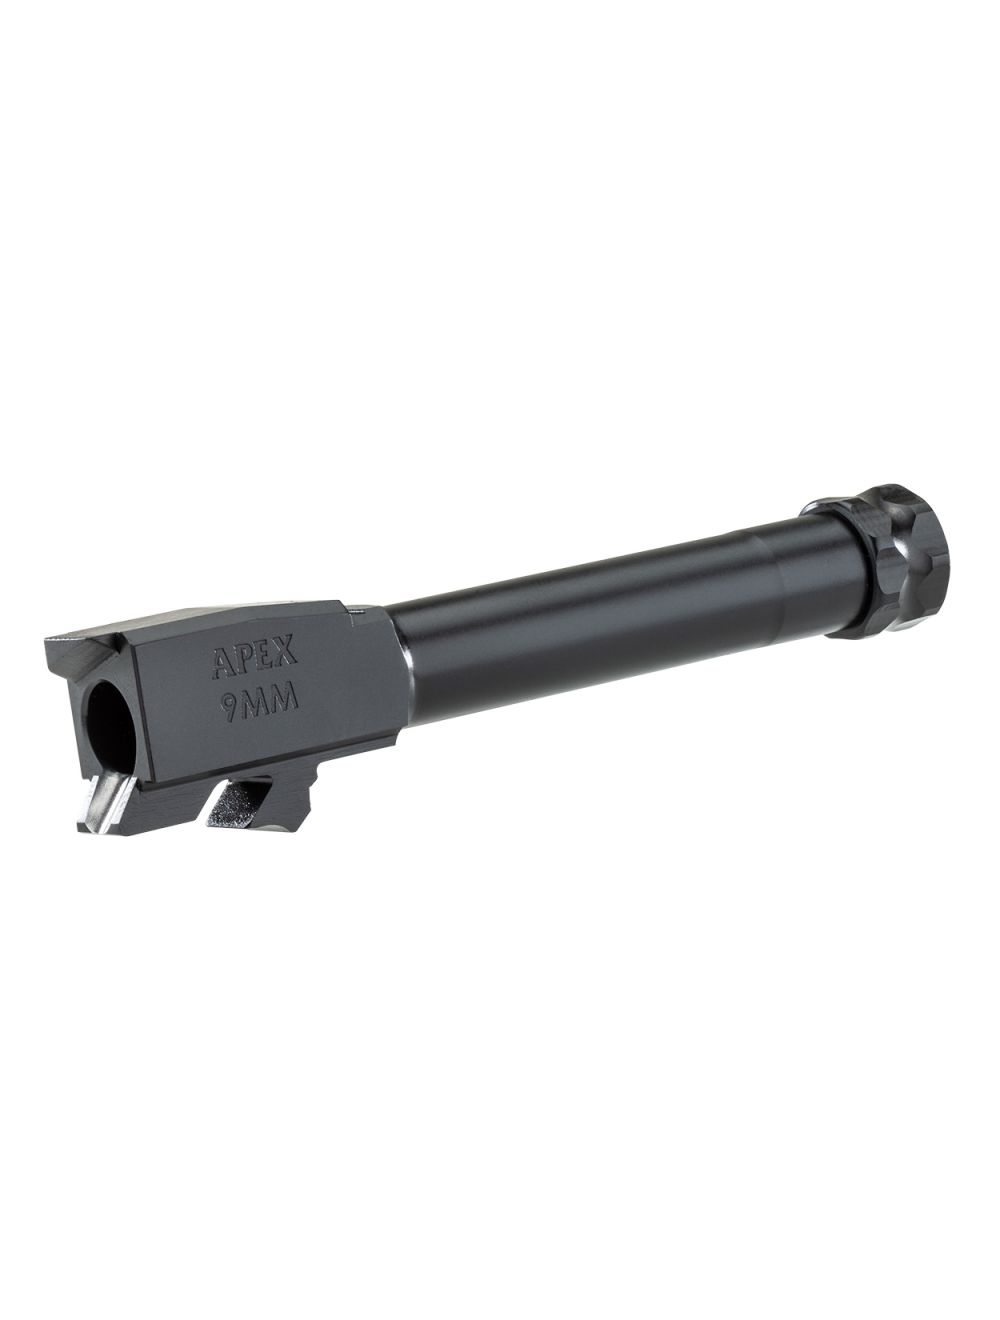 Apex 9mm Barrel for FN 509